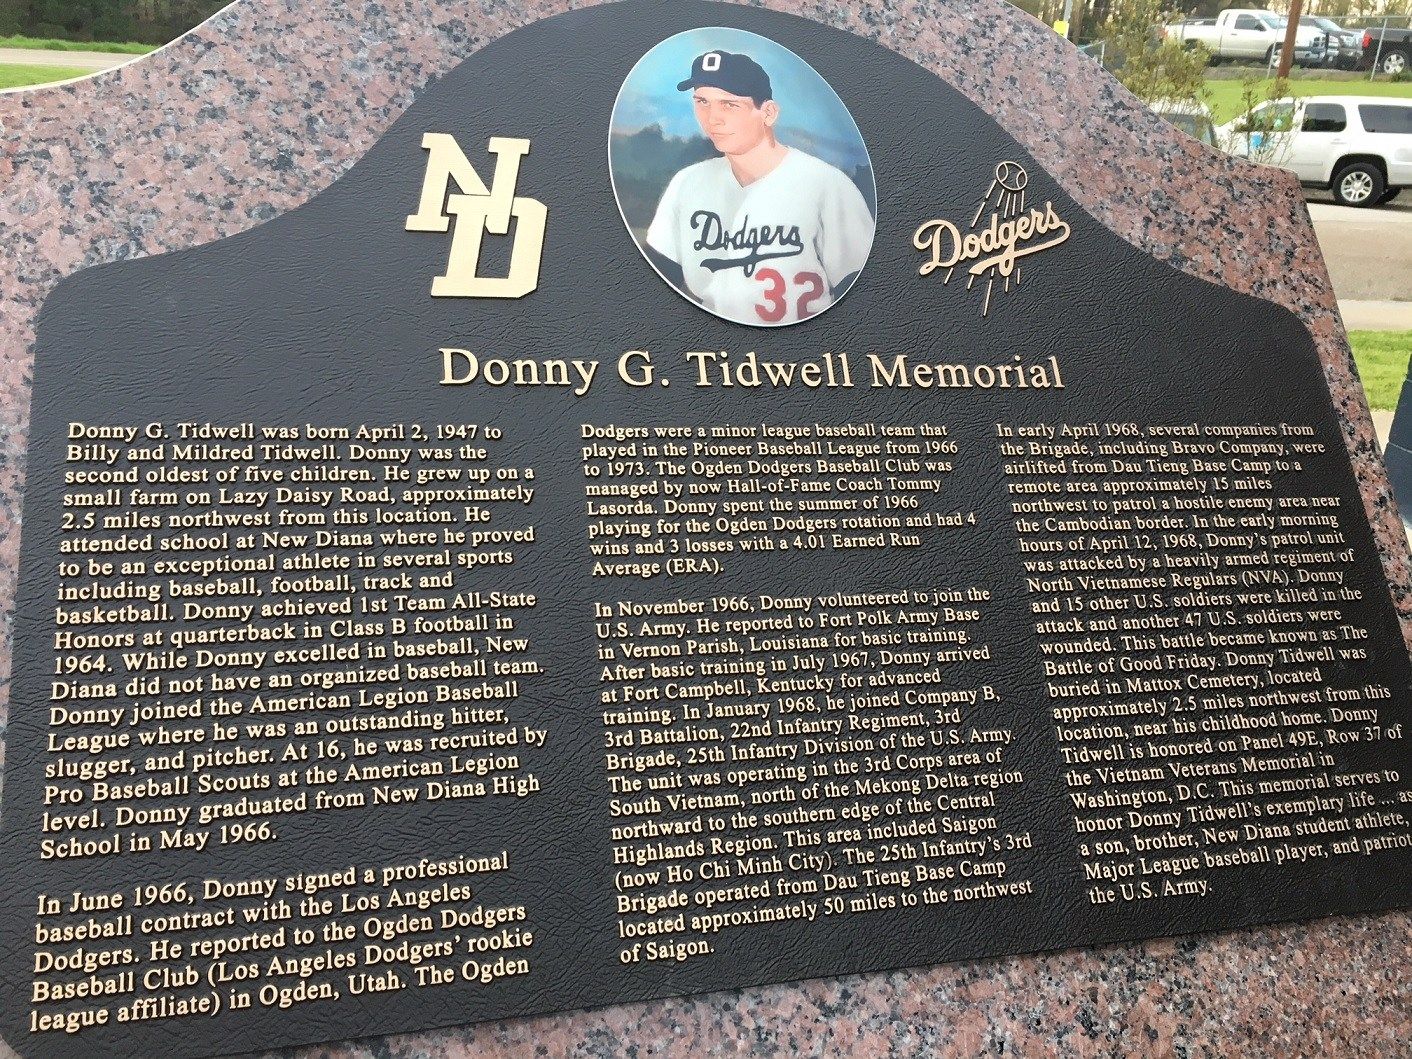 Tommy Lasorda Memorial Highway Being Dedicated To Honor Former